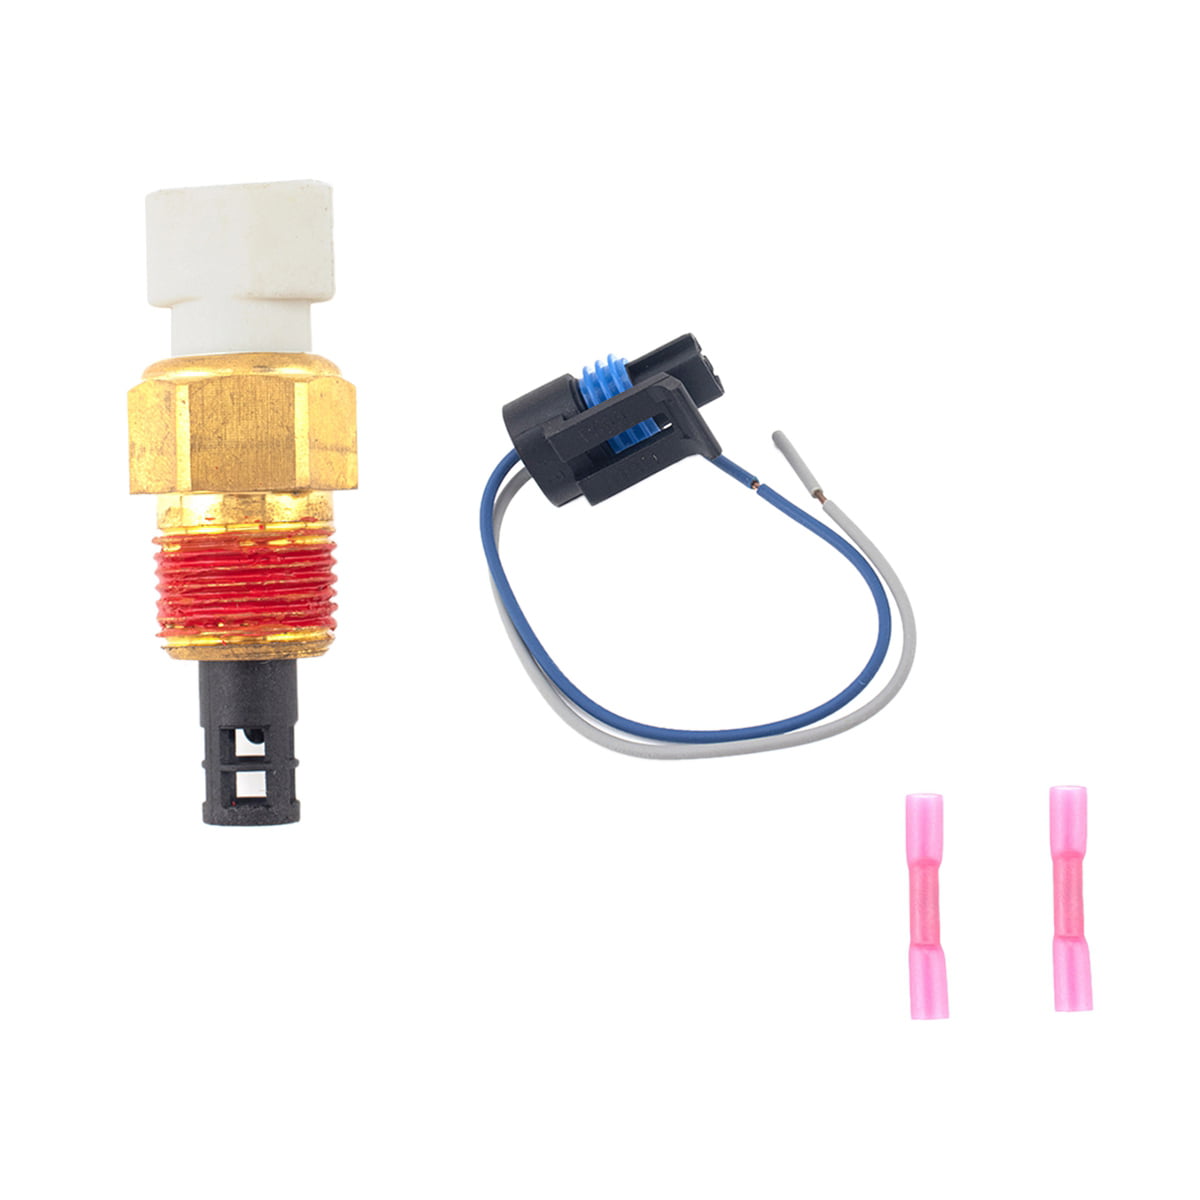 25036751 Intake Air Temperature Sensor Kit w/ Metri-Pack Connector & Terminals 